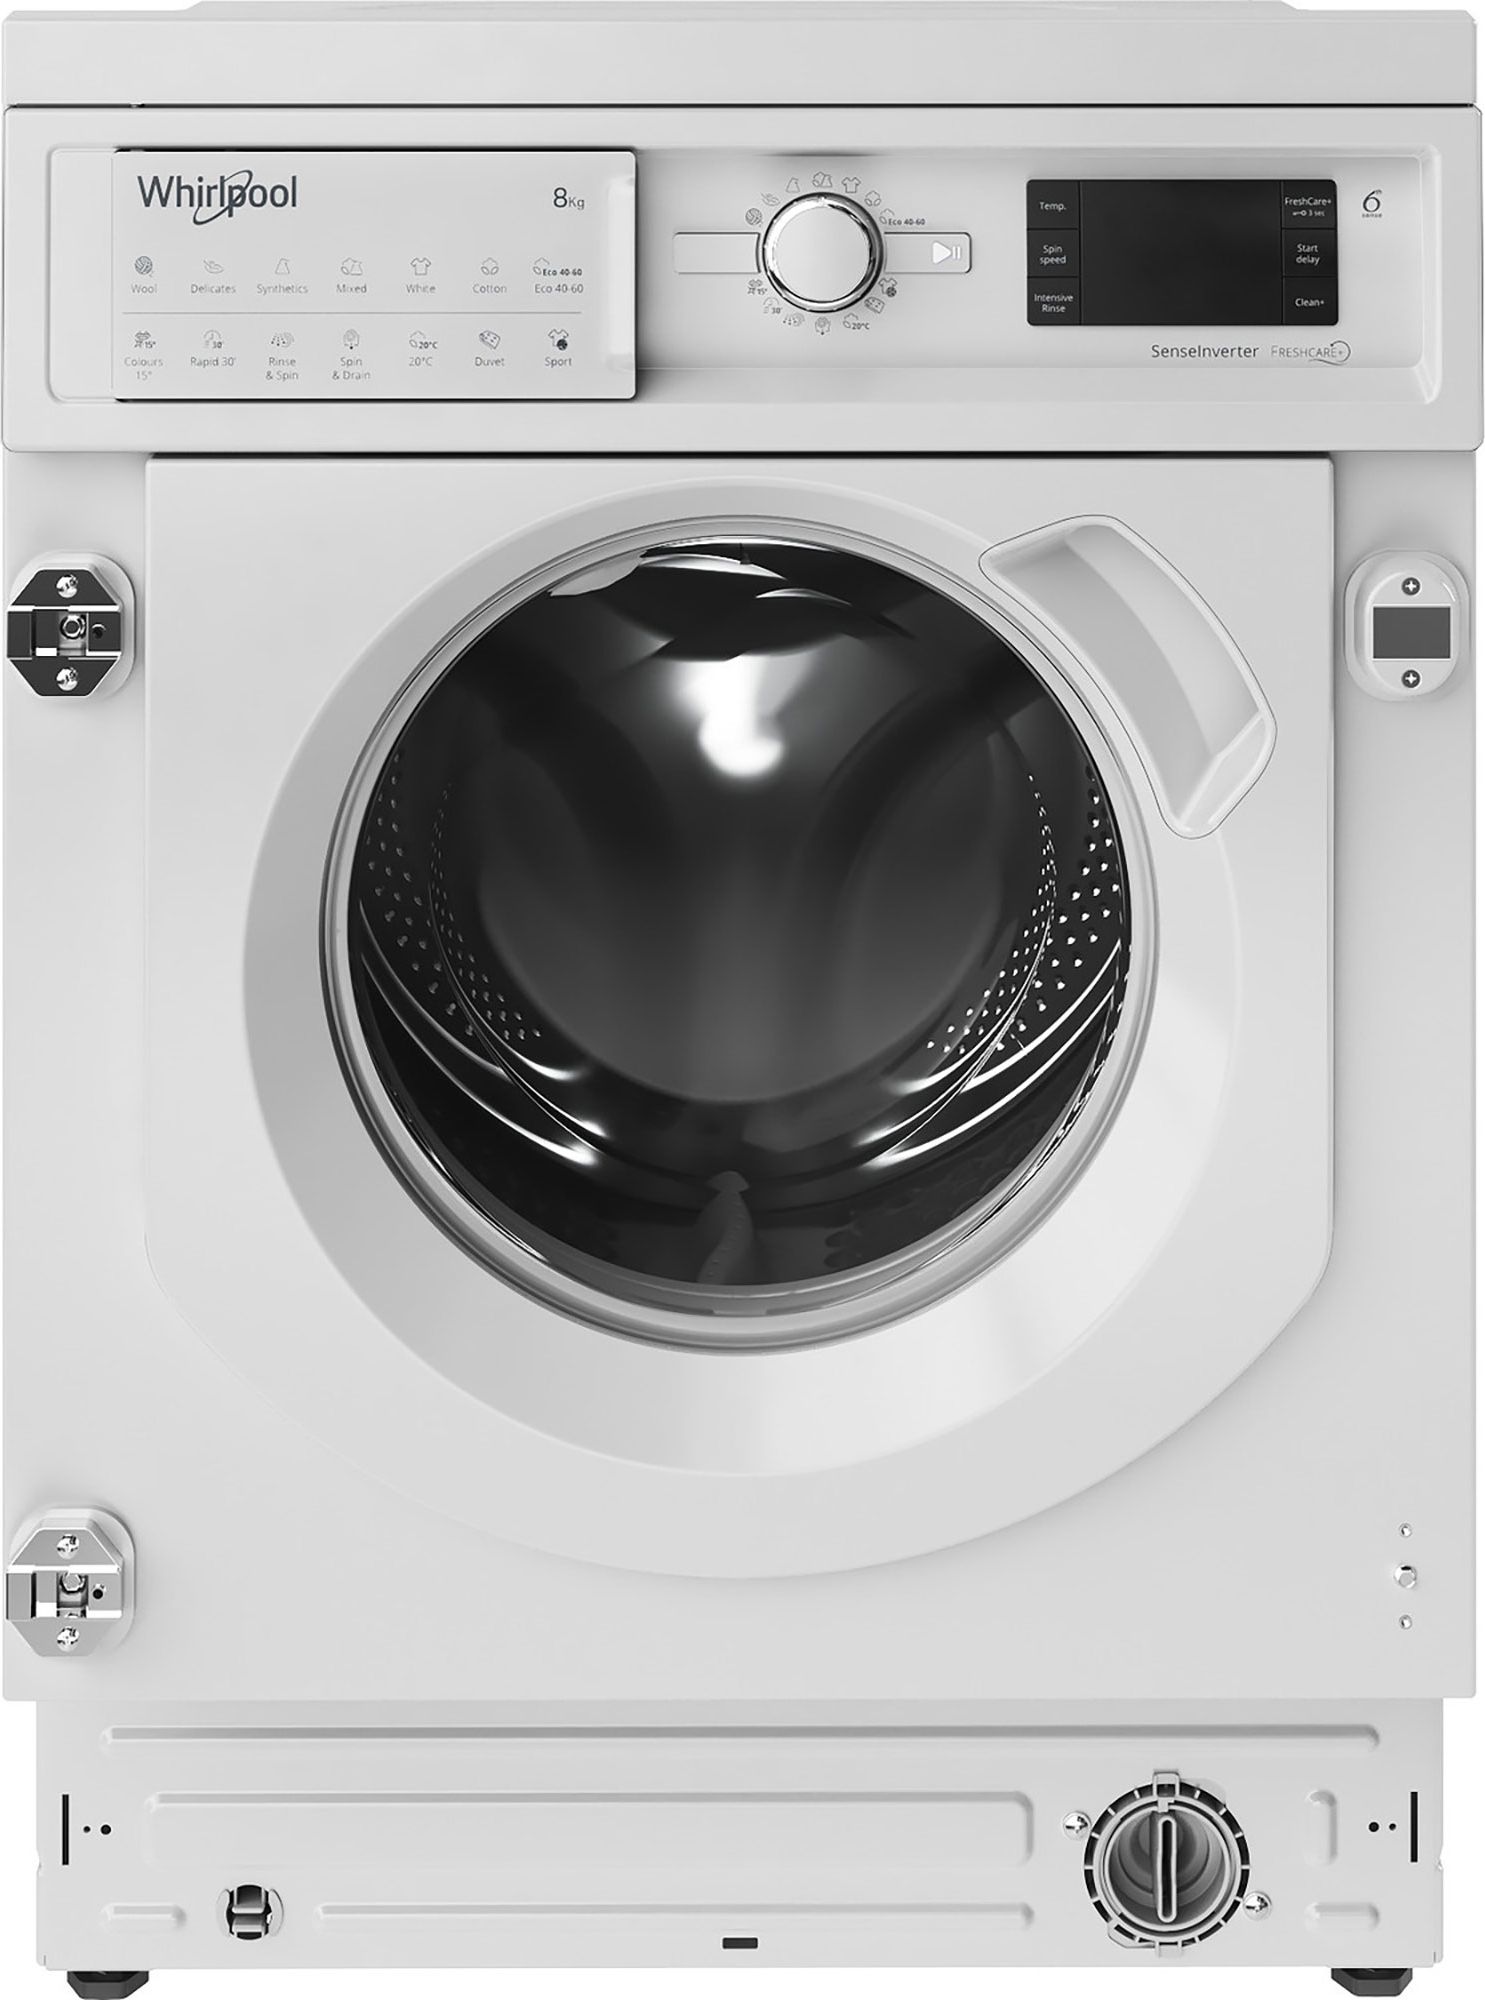 Whirlpool BIWMWG81485UK Integrated 8kg Washing Machine with 1400 rpm - White - B Rated, White